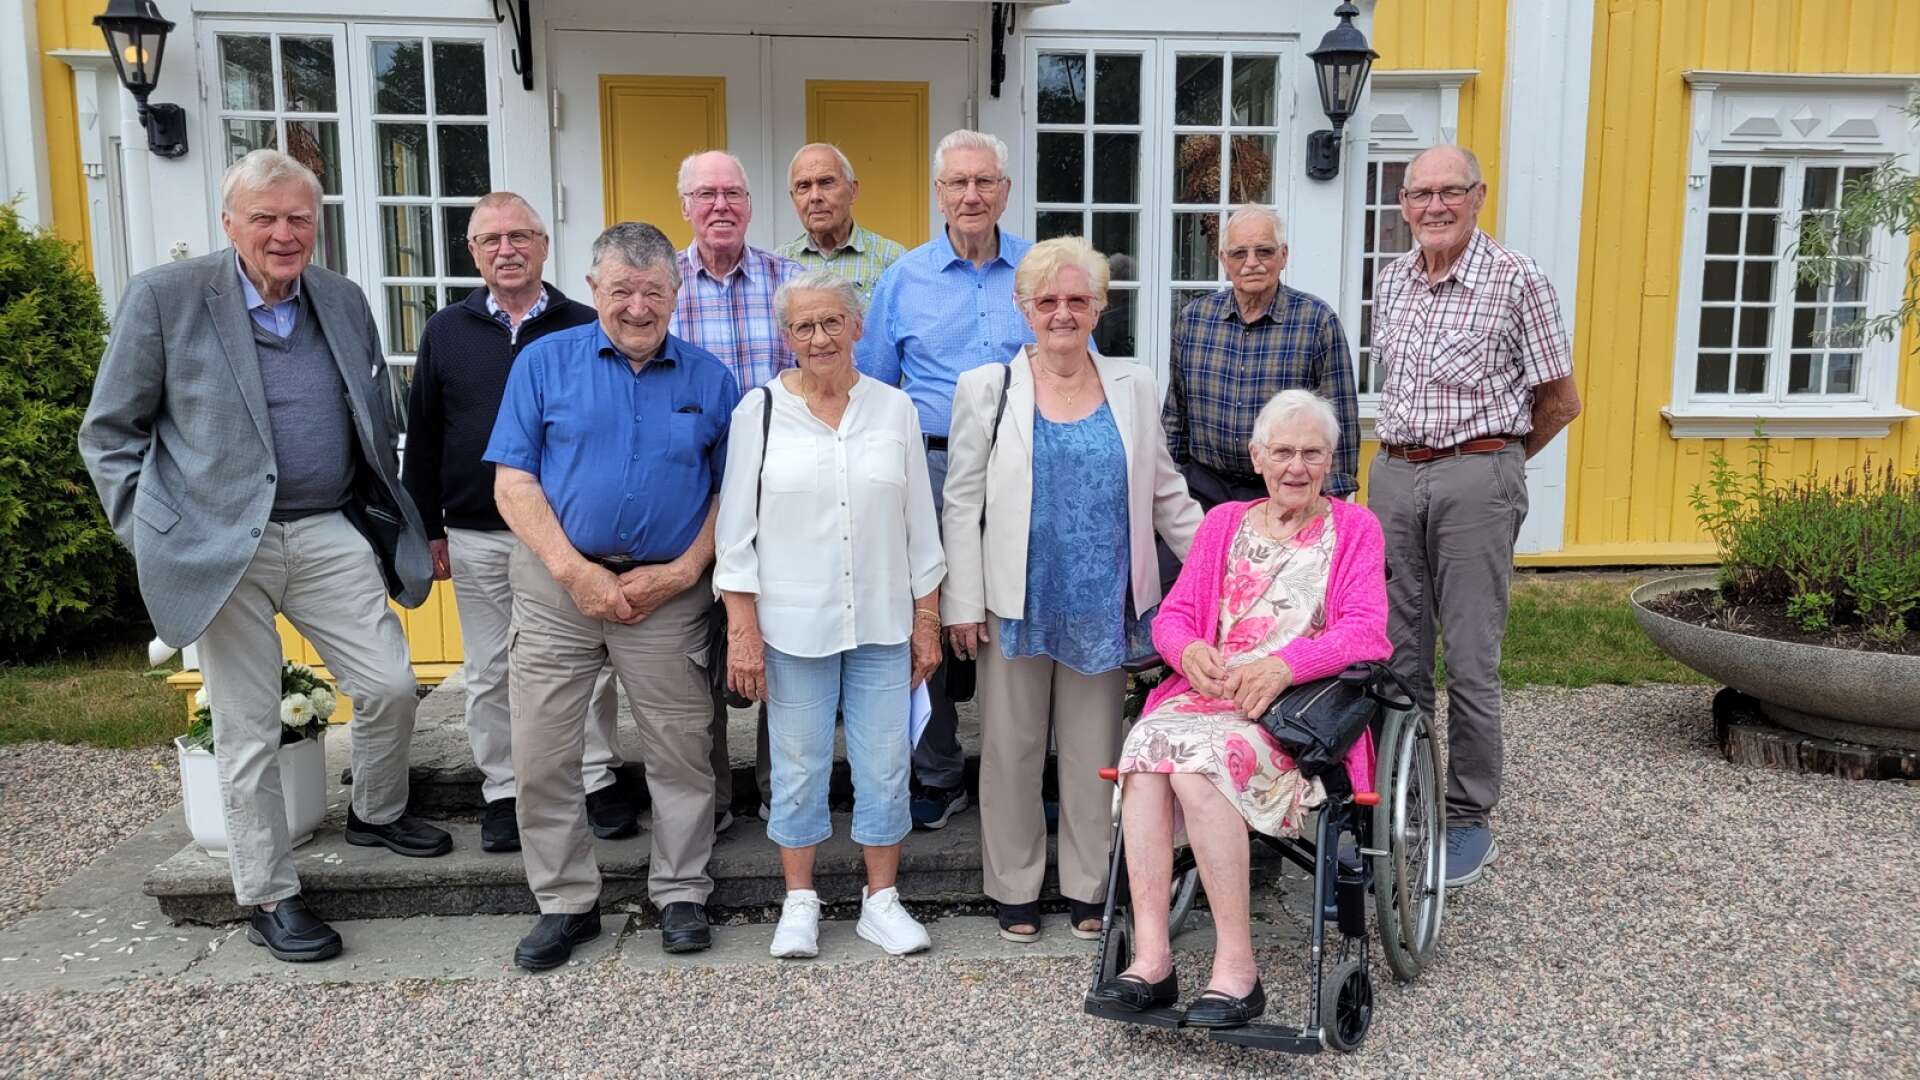 Elva Särestadselever samlades på Ronnums herrgård.